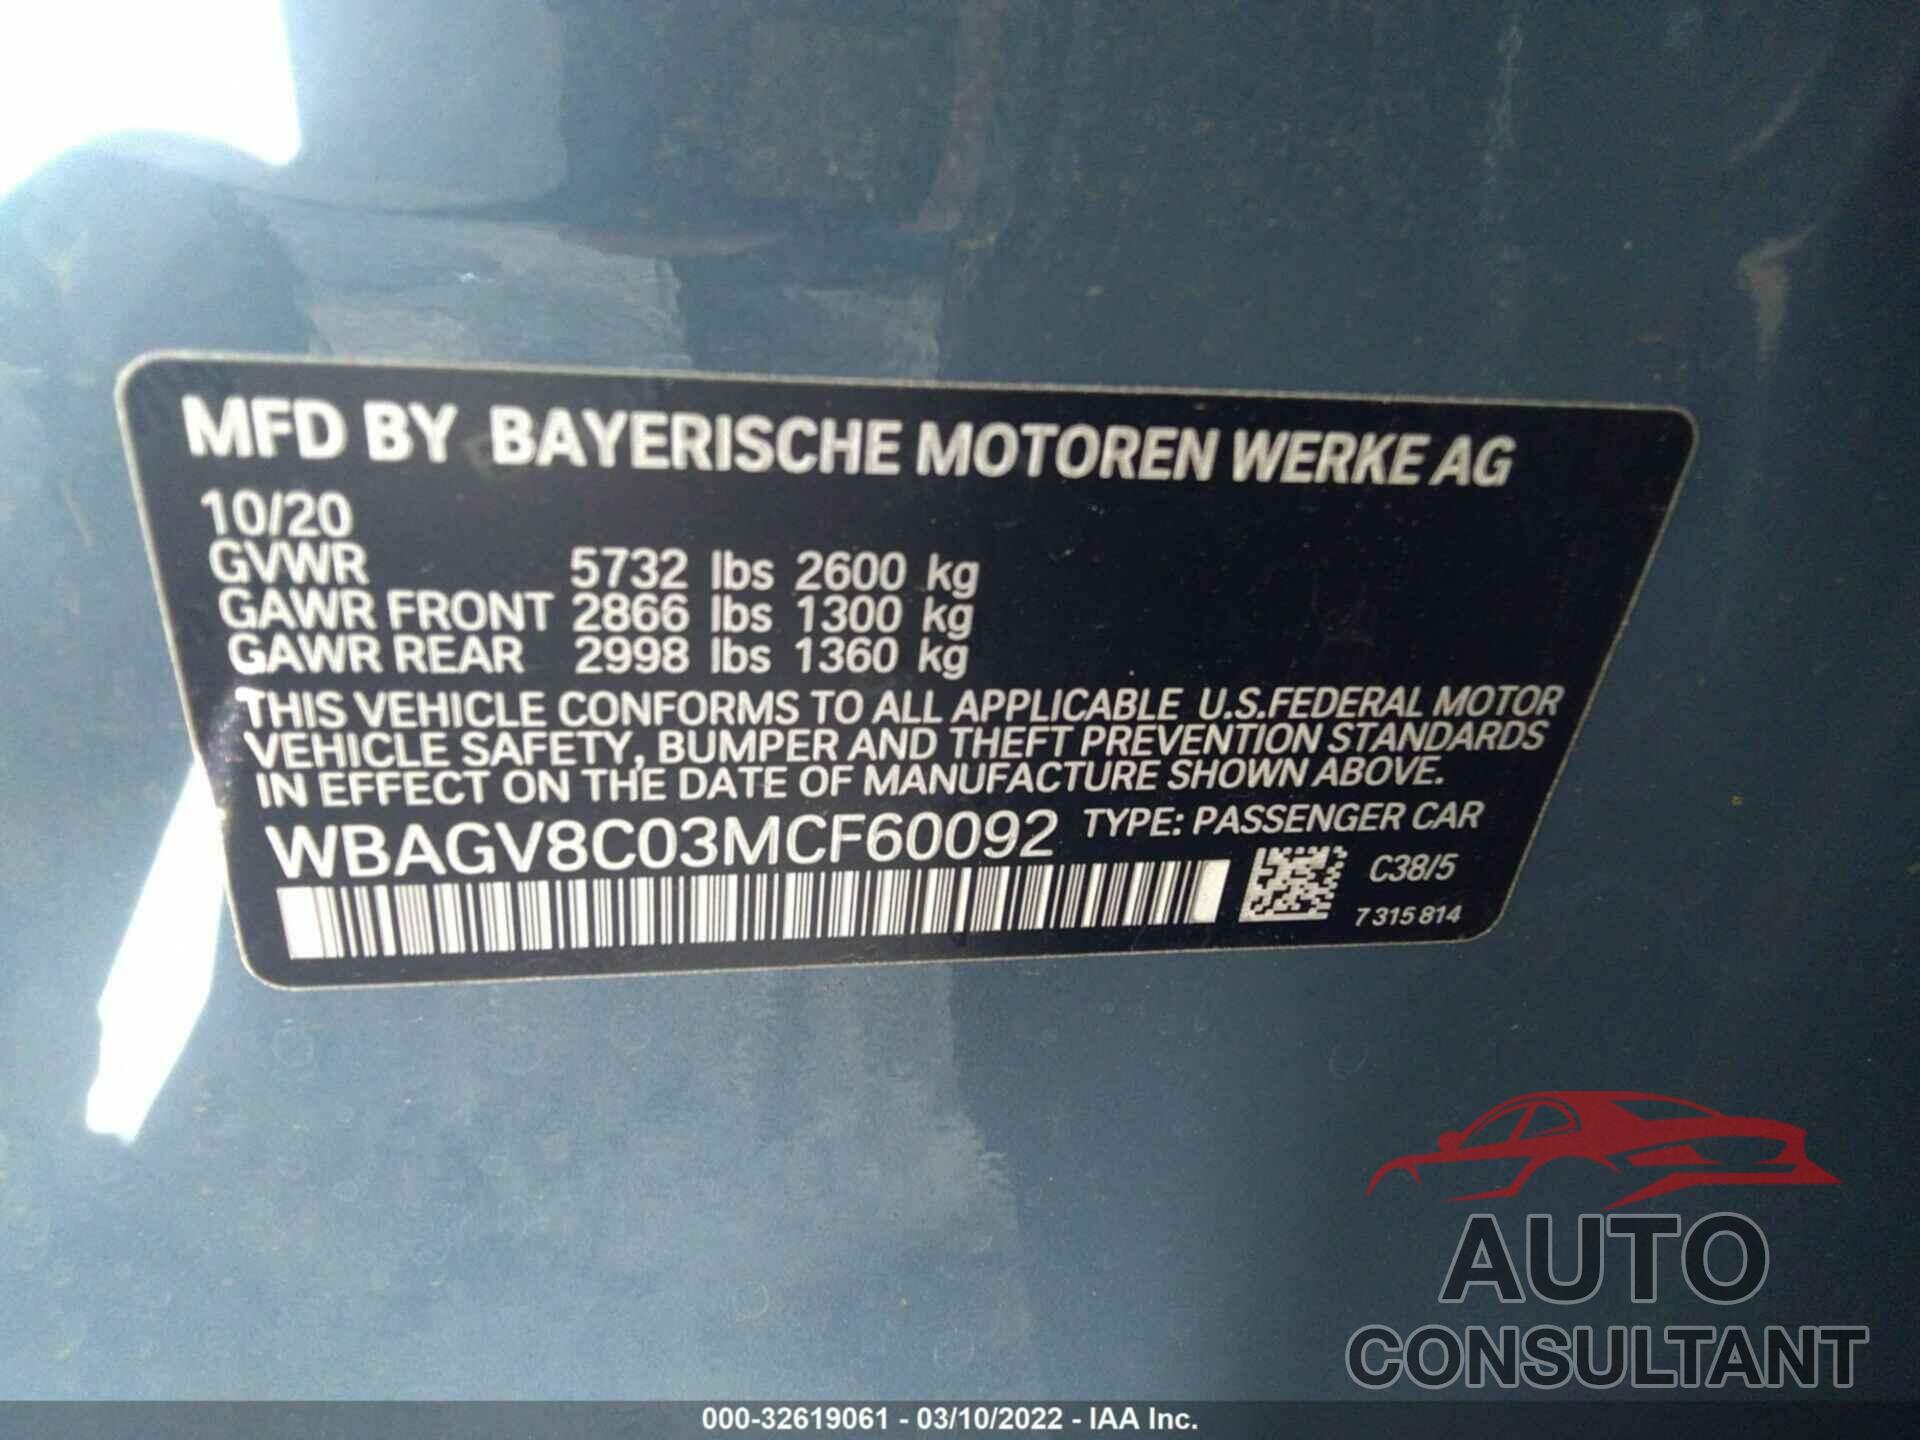 BMW 8 SERIES 2021 - WBAGV8C03MCF60092